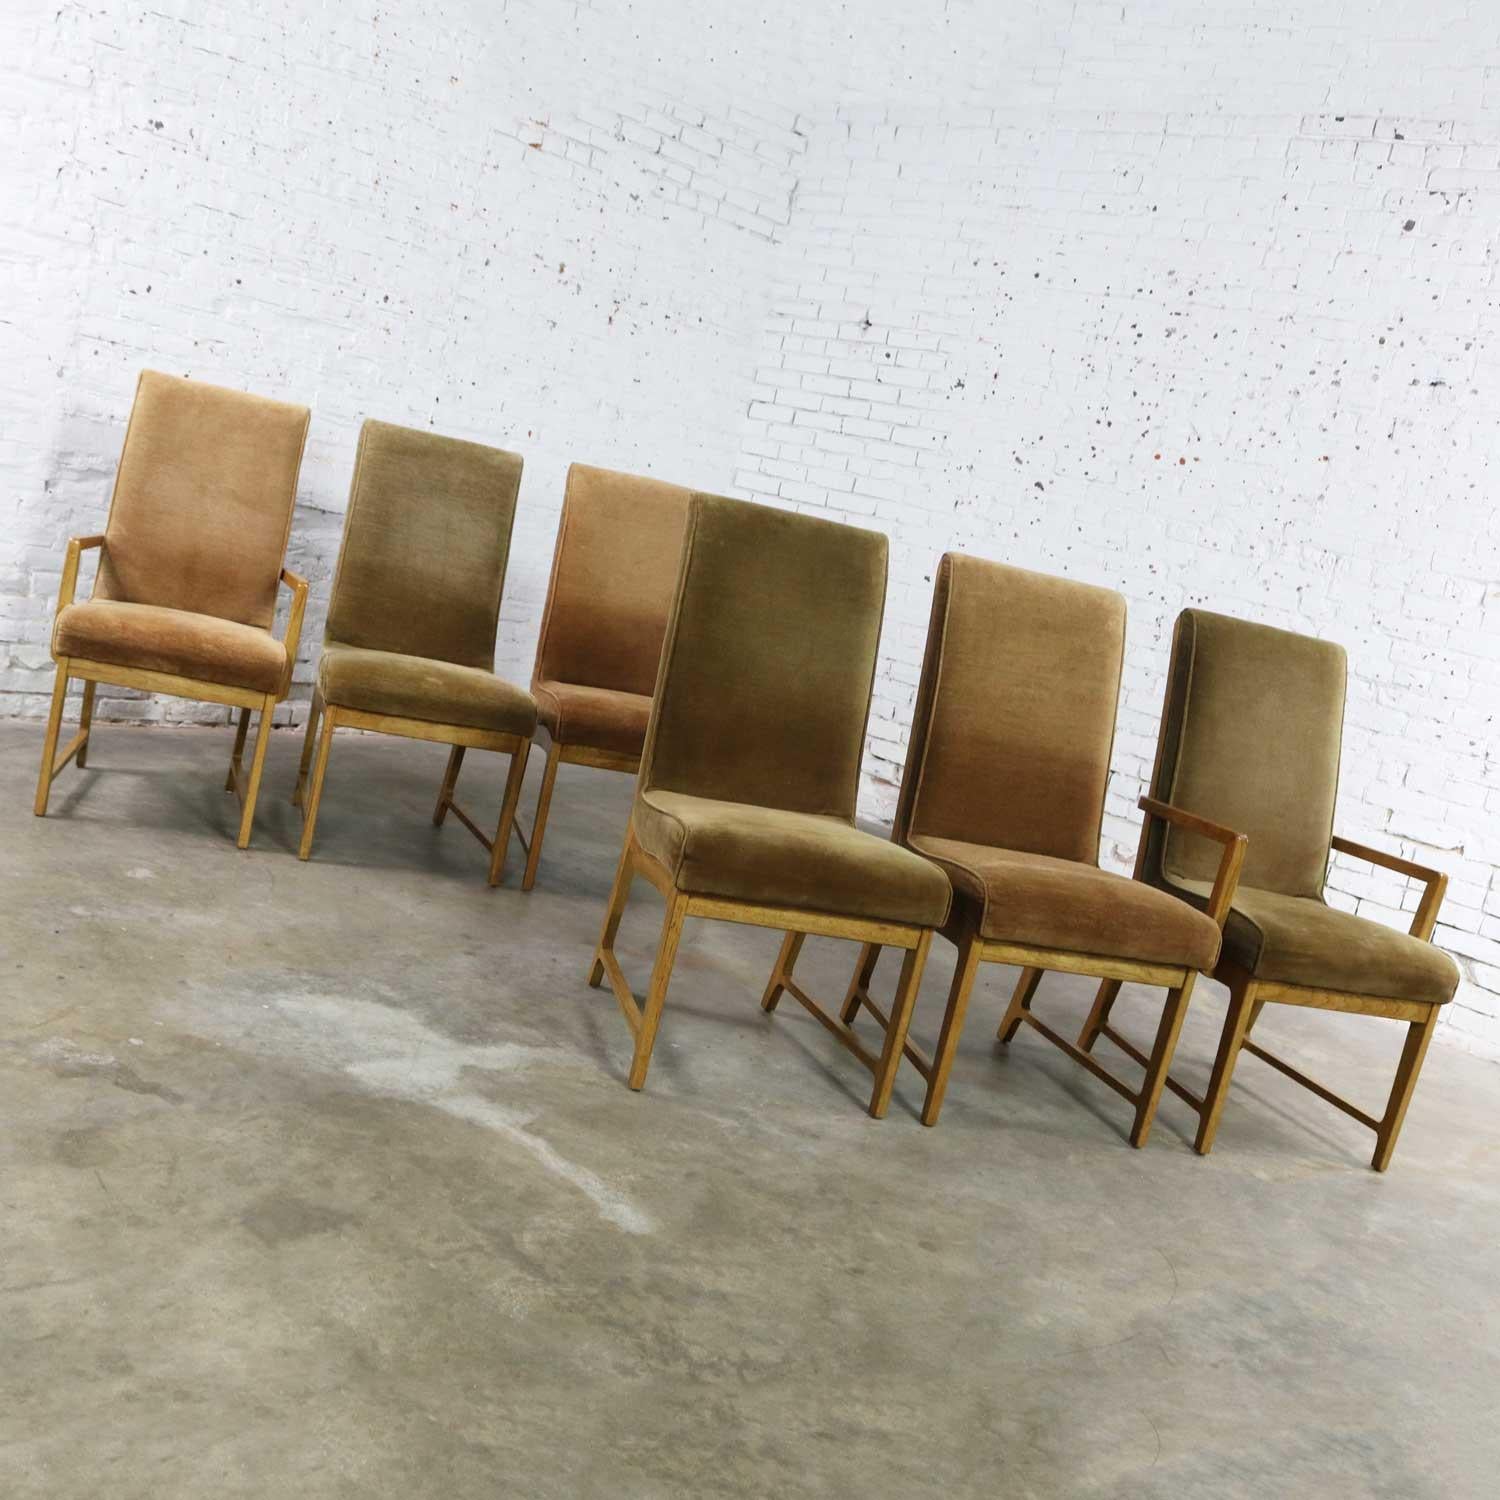 6 Modern Style Vintage Dining Chairs Velvet Scoop Seats Bernhardt Flair Hibriten 1